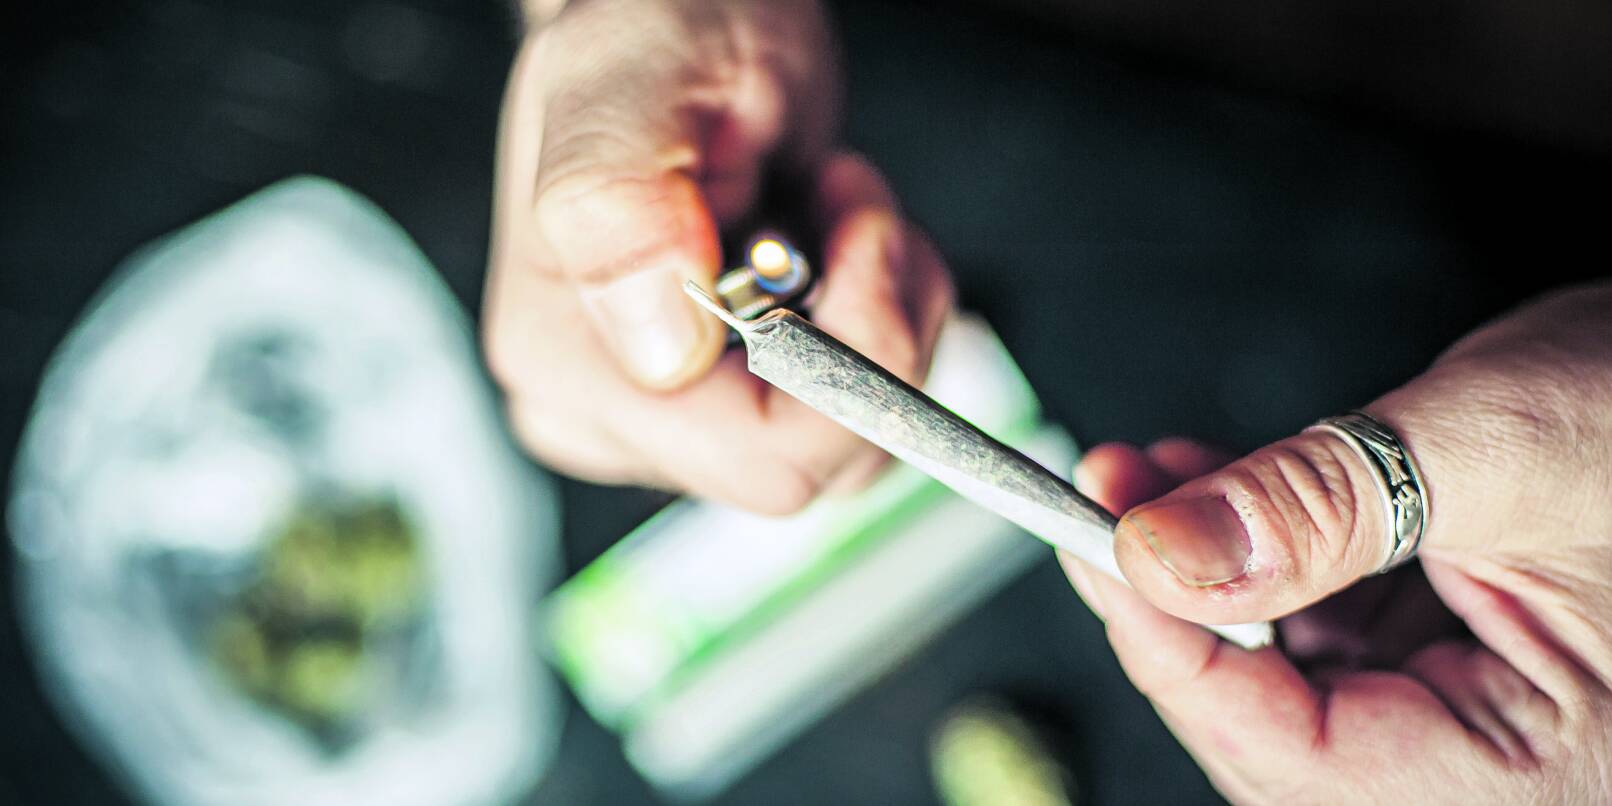 Legal einen Joint rauchen ist bald kein Wunschdenken mehr: Ab voraussichtlich April ist der Anbau zum Eigenkonsum von Cannabis erlaubt.